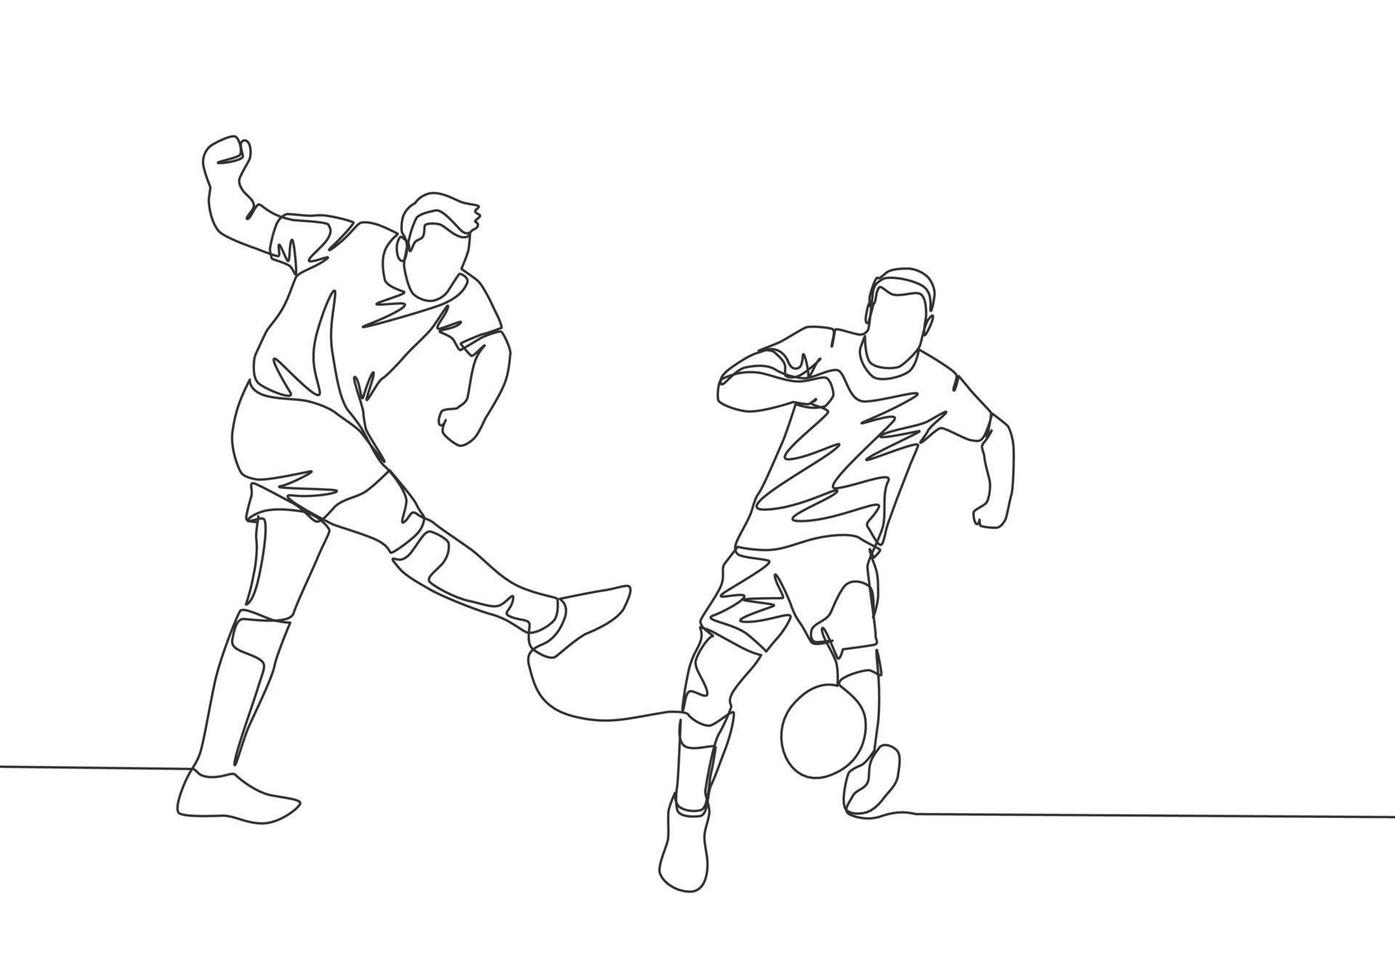 1 contínuo linha desenhando do jovem futebol atacante tiroteio a bola e a defensor bloqueio a bola. futebol Combine Esportes conceito. solteiro linha desenhar Projeto vetor ilustração